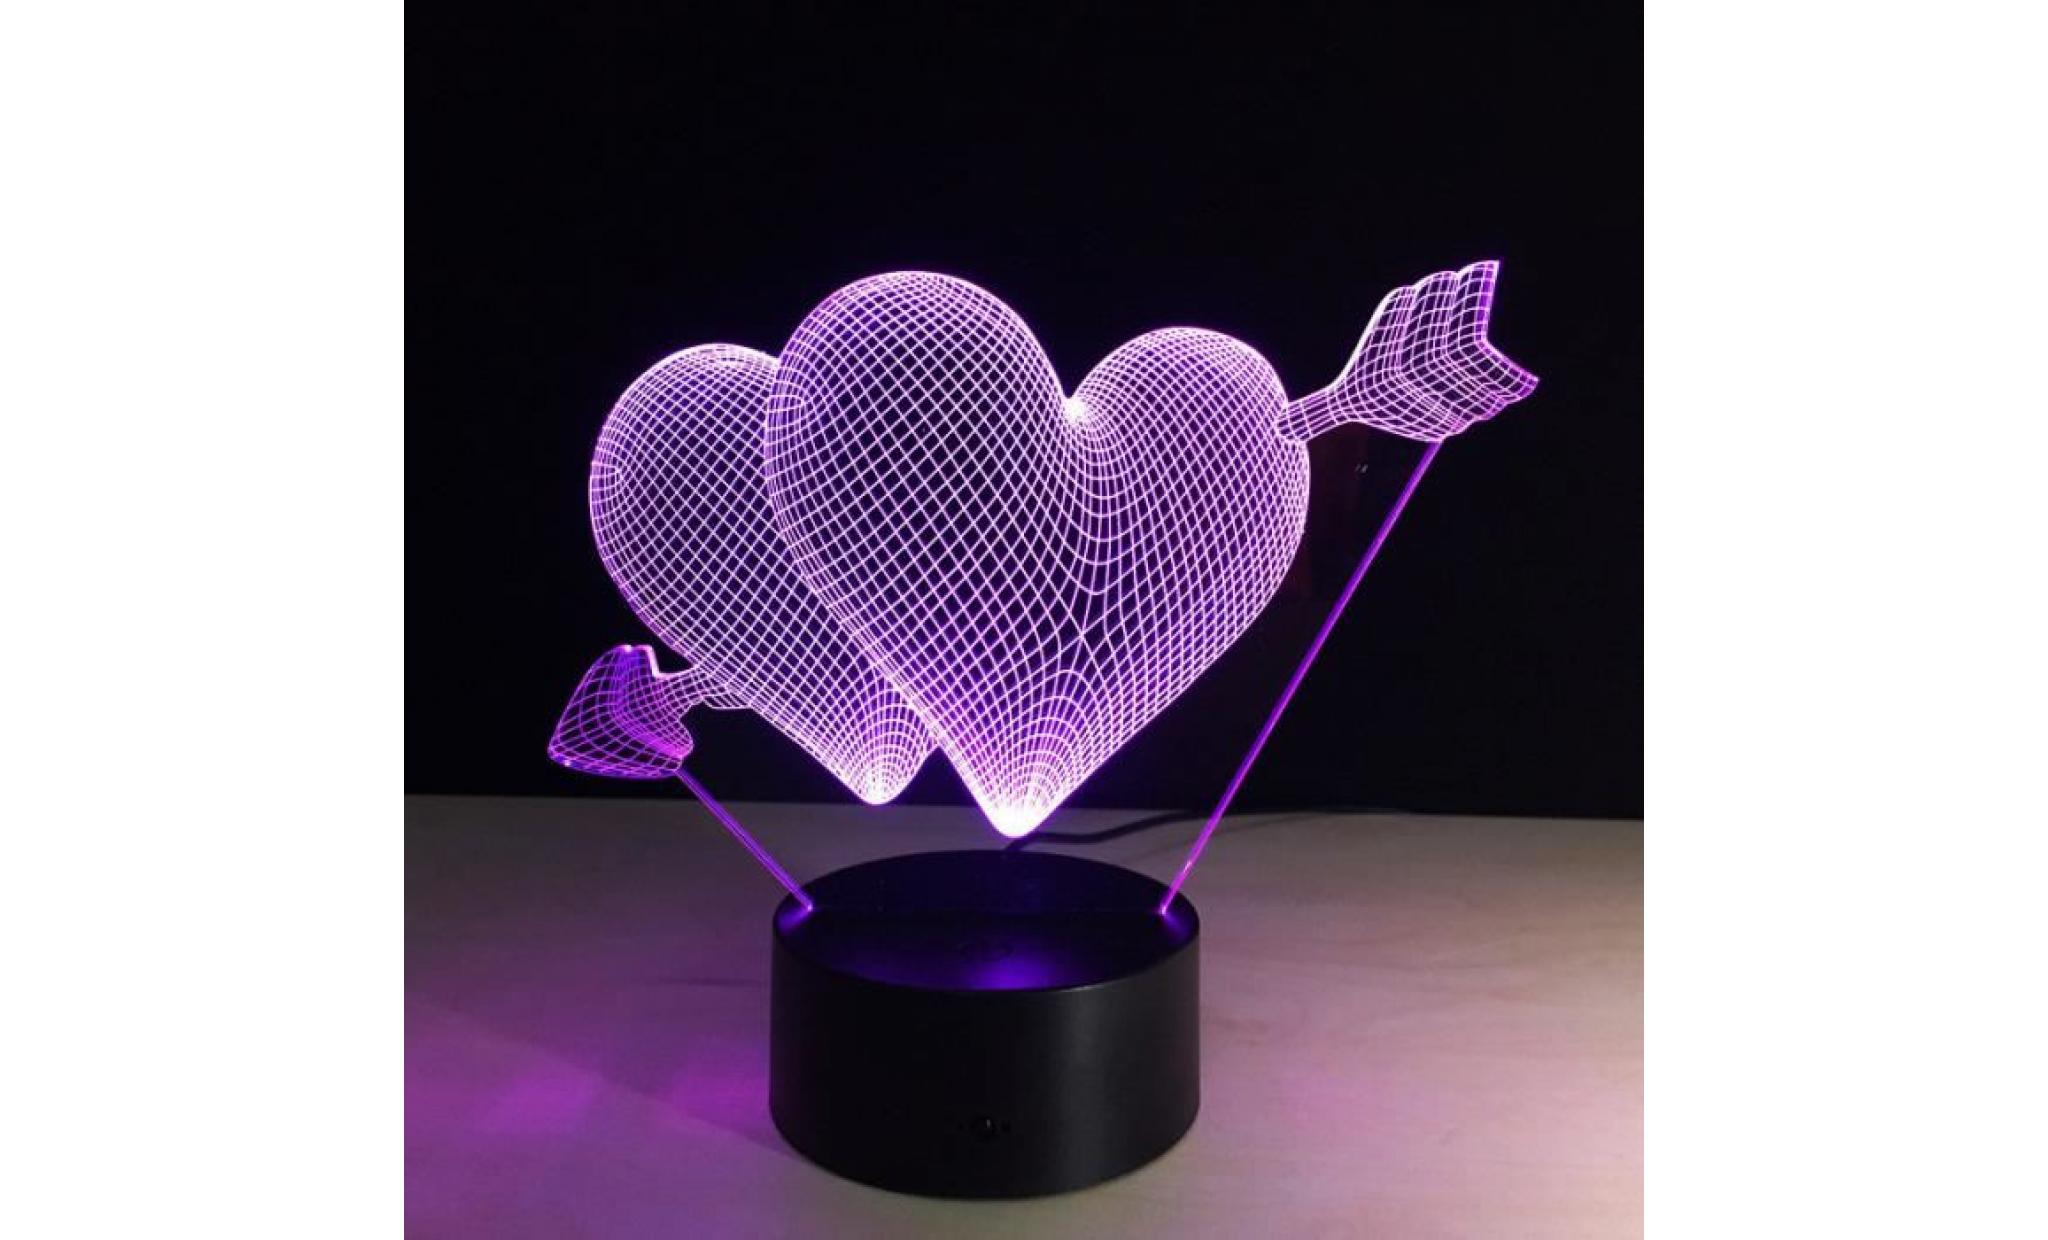 flèche par le coeur acrylique 3d lampe led colorée nuit table lumineuse chargement usb ylc204 pas cher